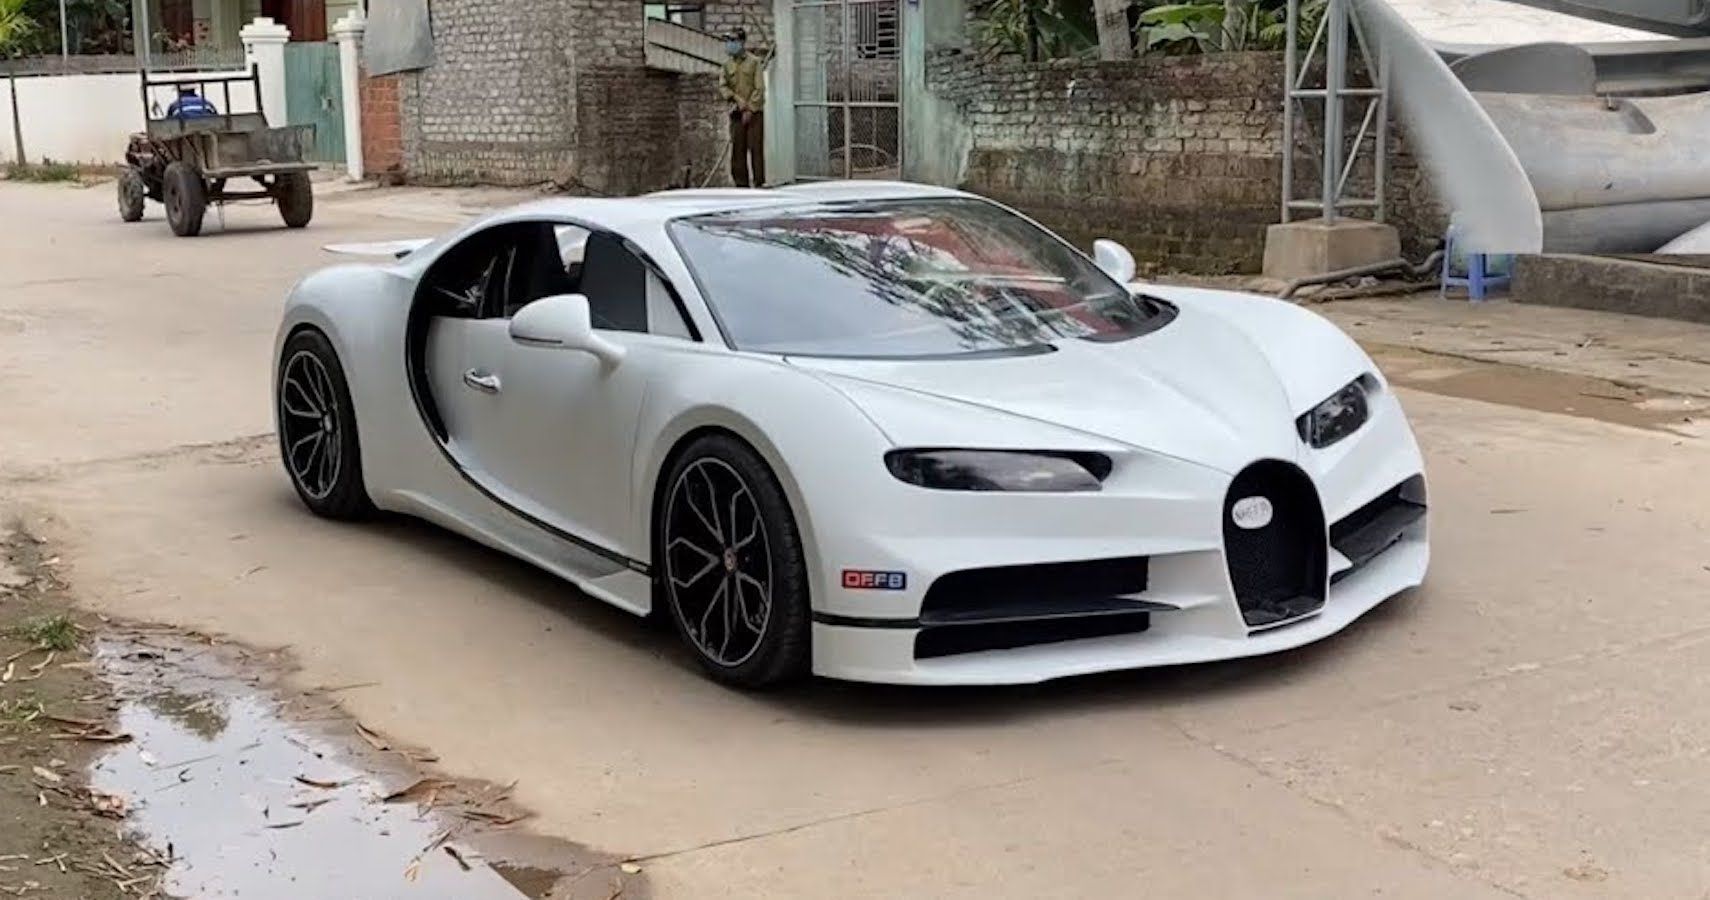 Pearl White Bugatti replica